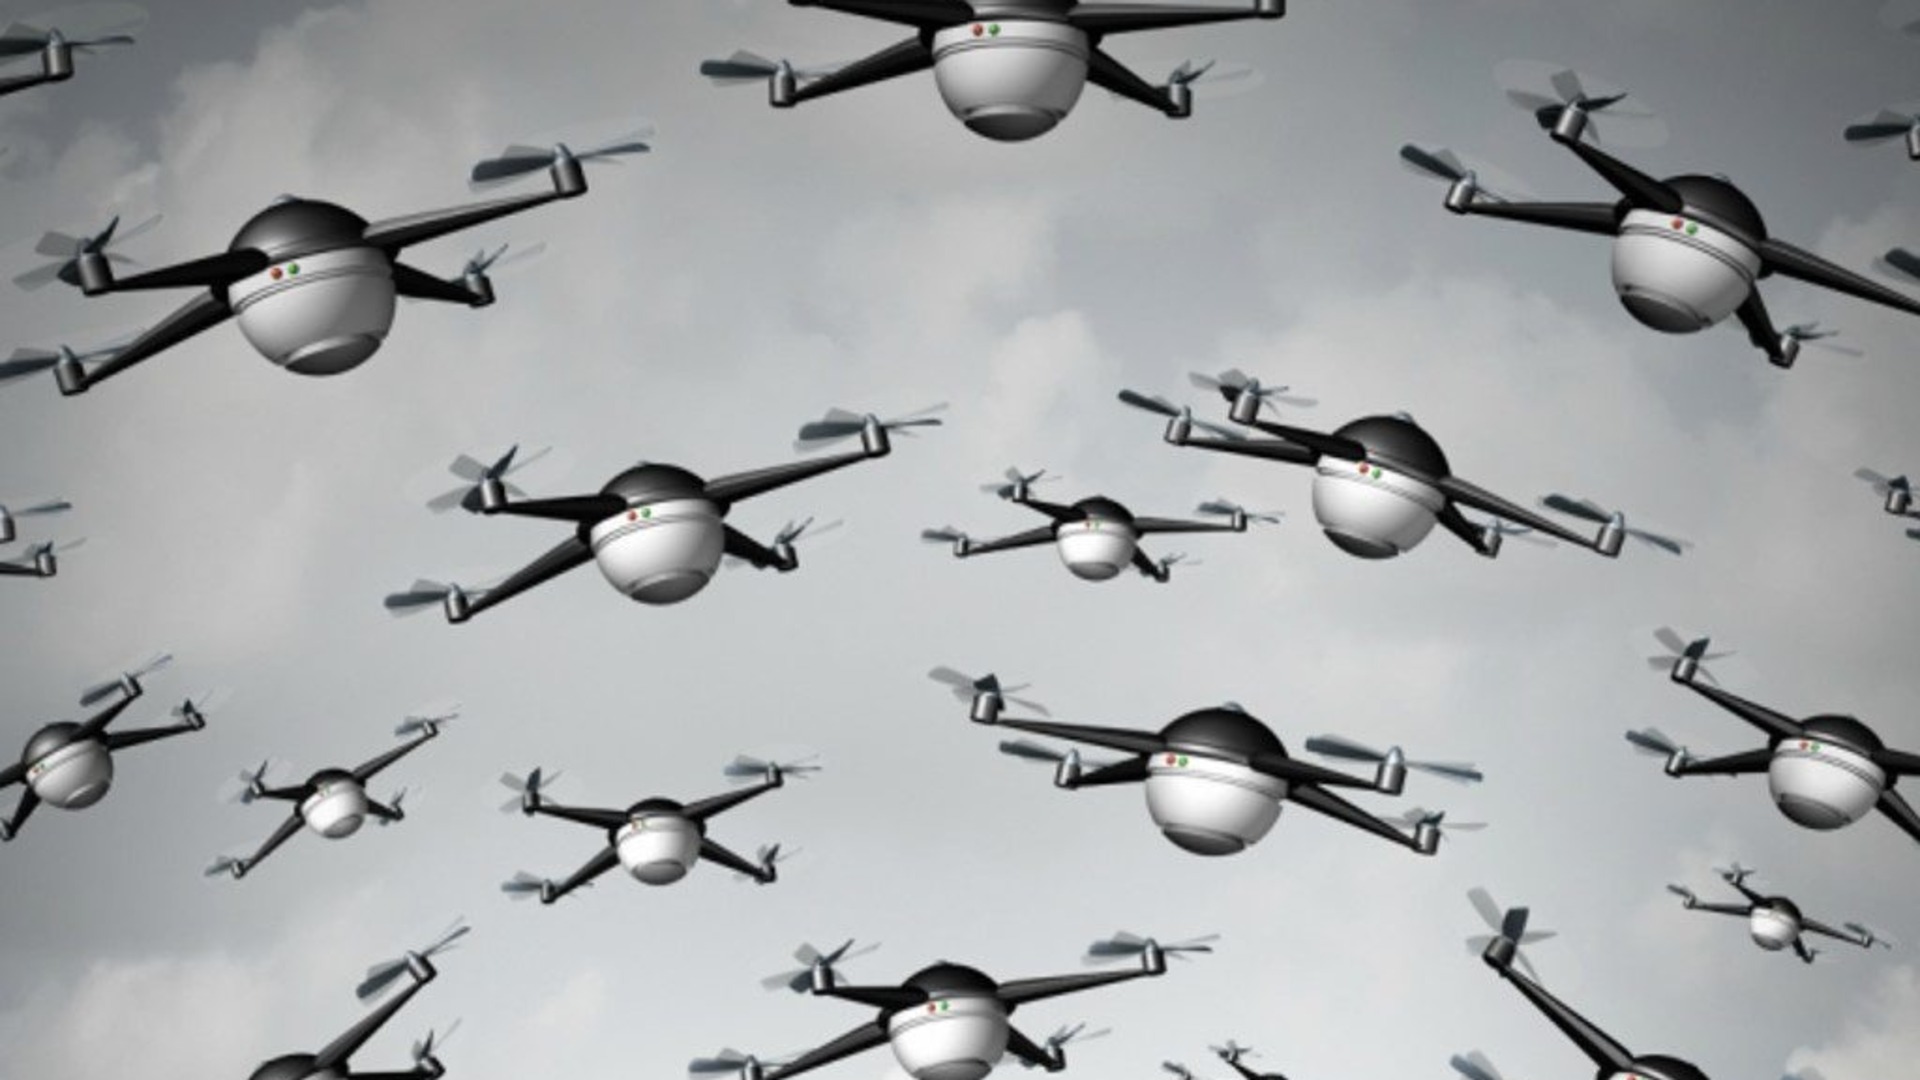 Drone swarm steam фото 101